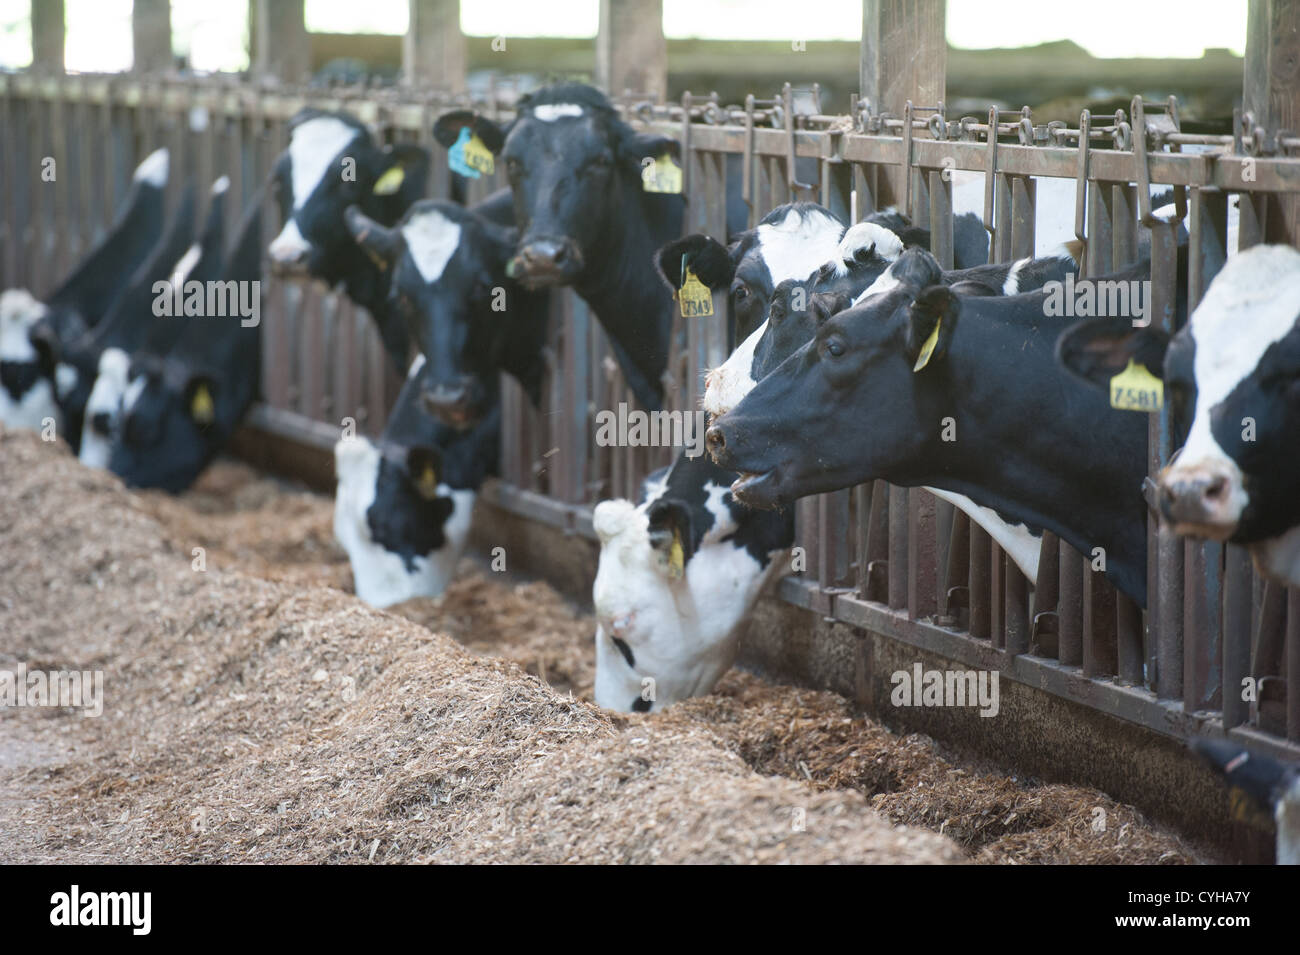 Les vaches laitières dans une alimentation stable Banque D'Images